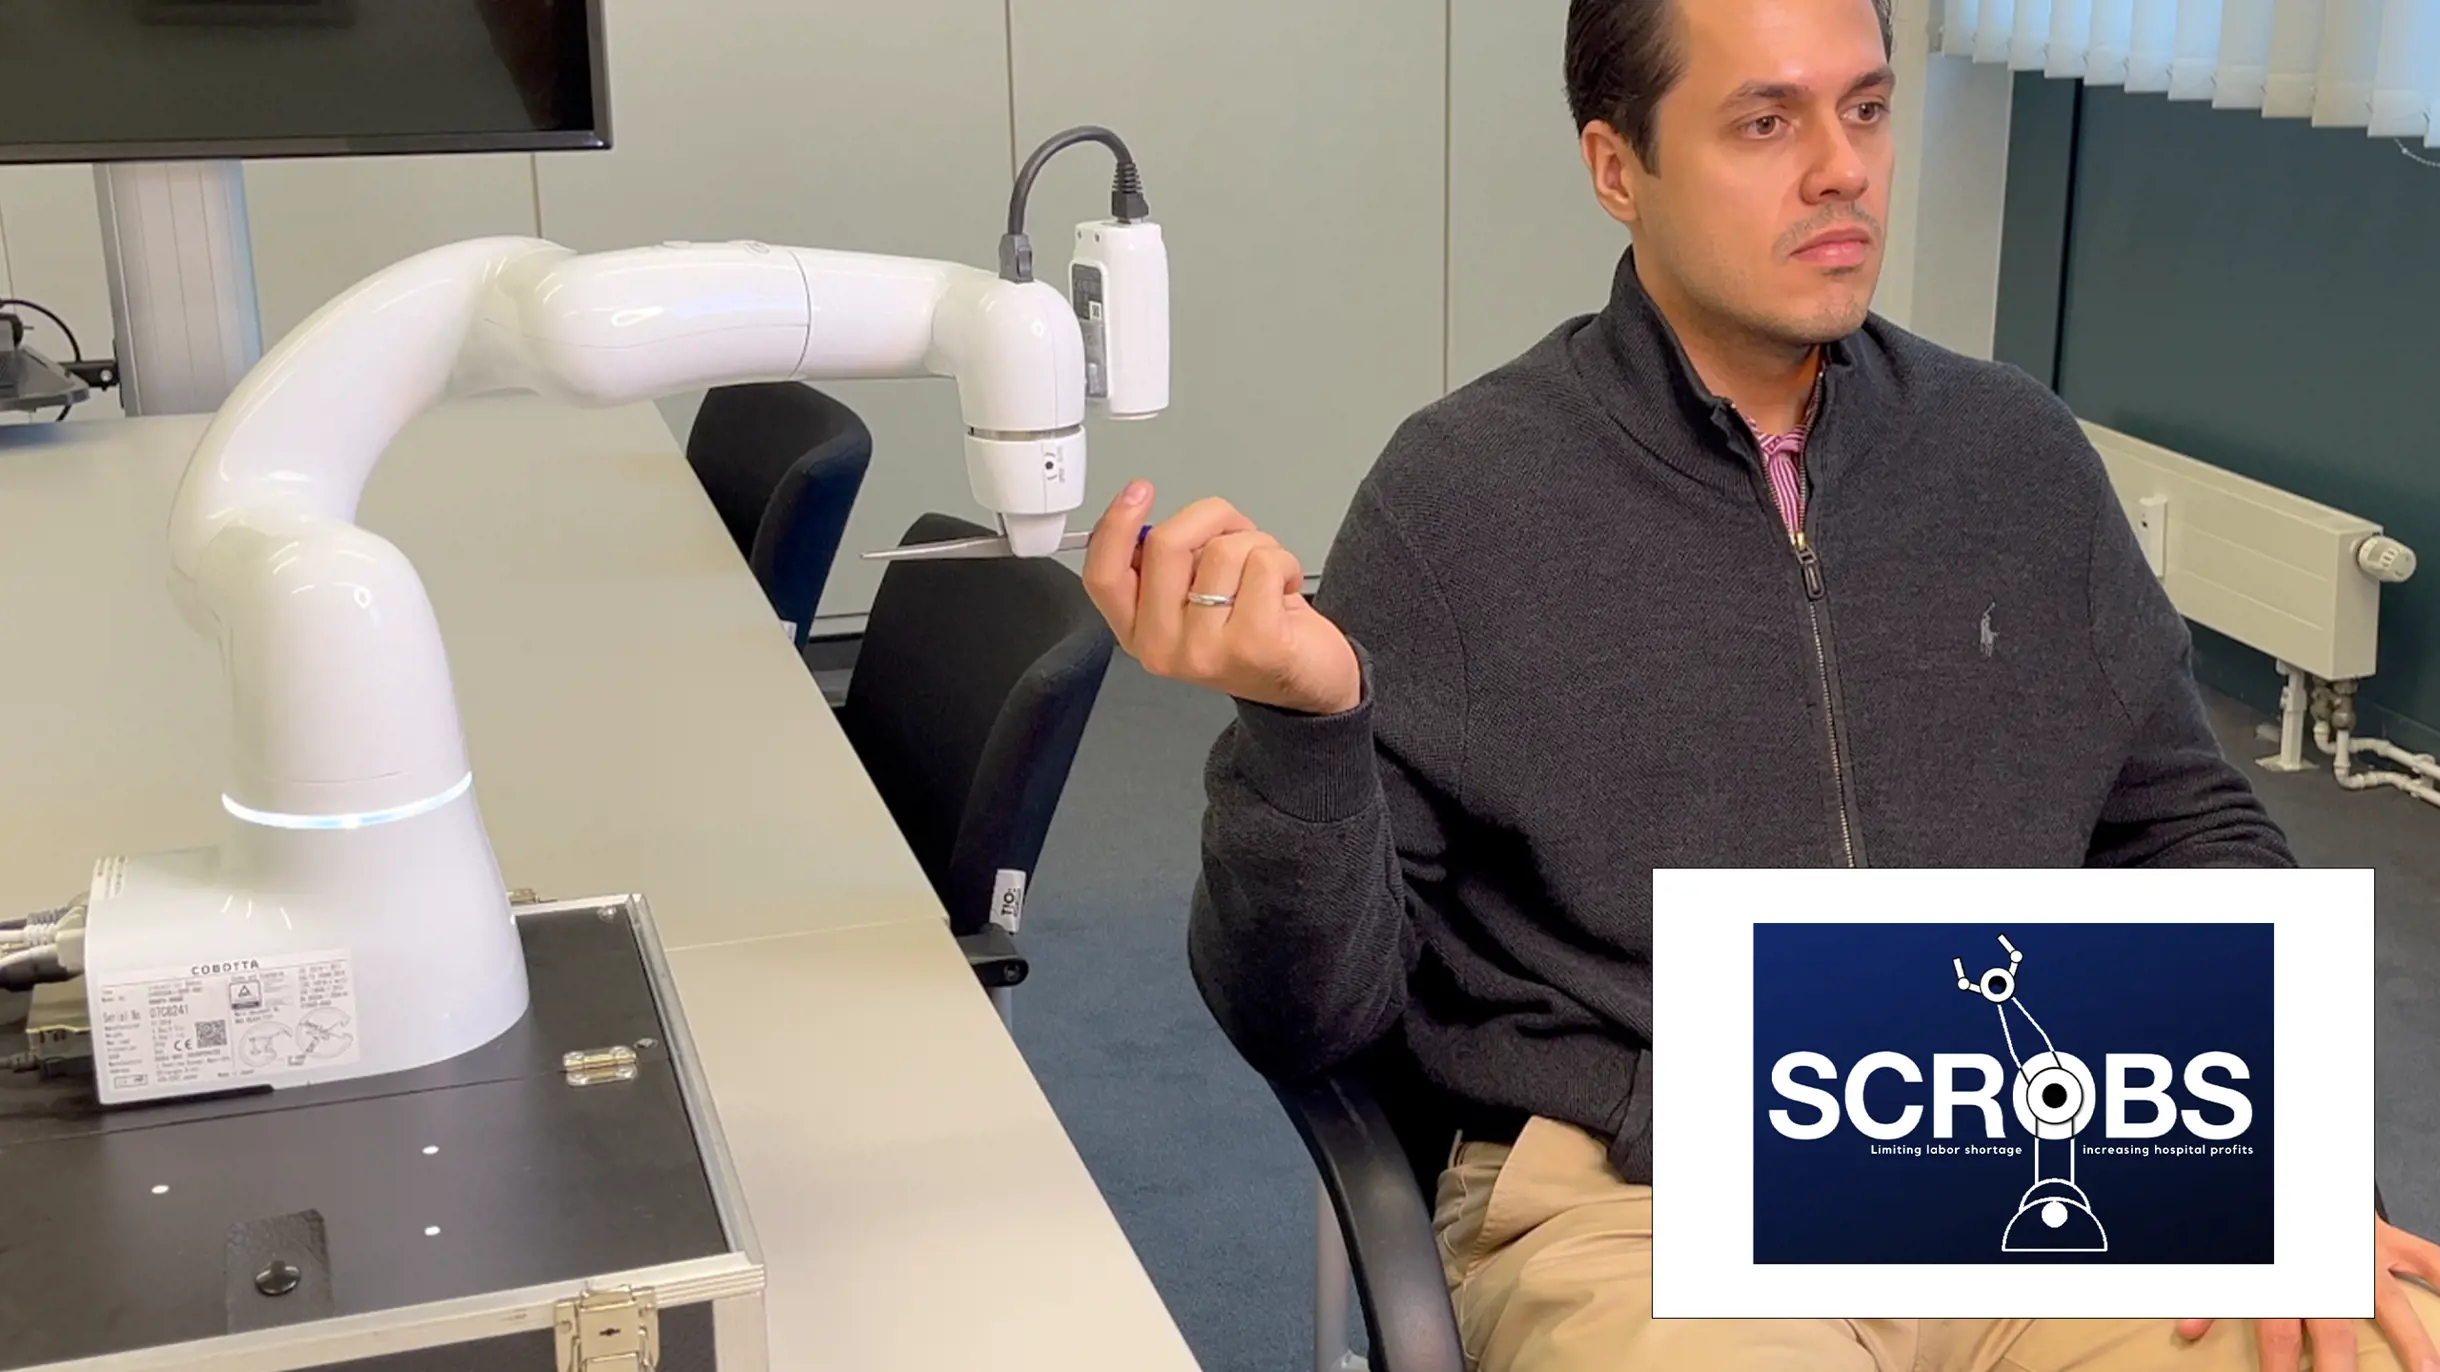 Scrobs Roboterarm als Assistenzsysteme in der Medizin